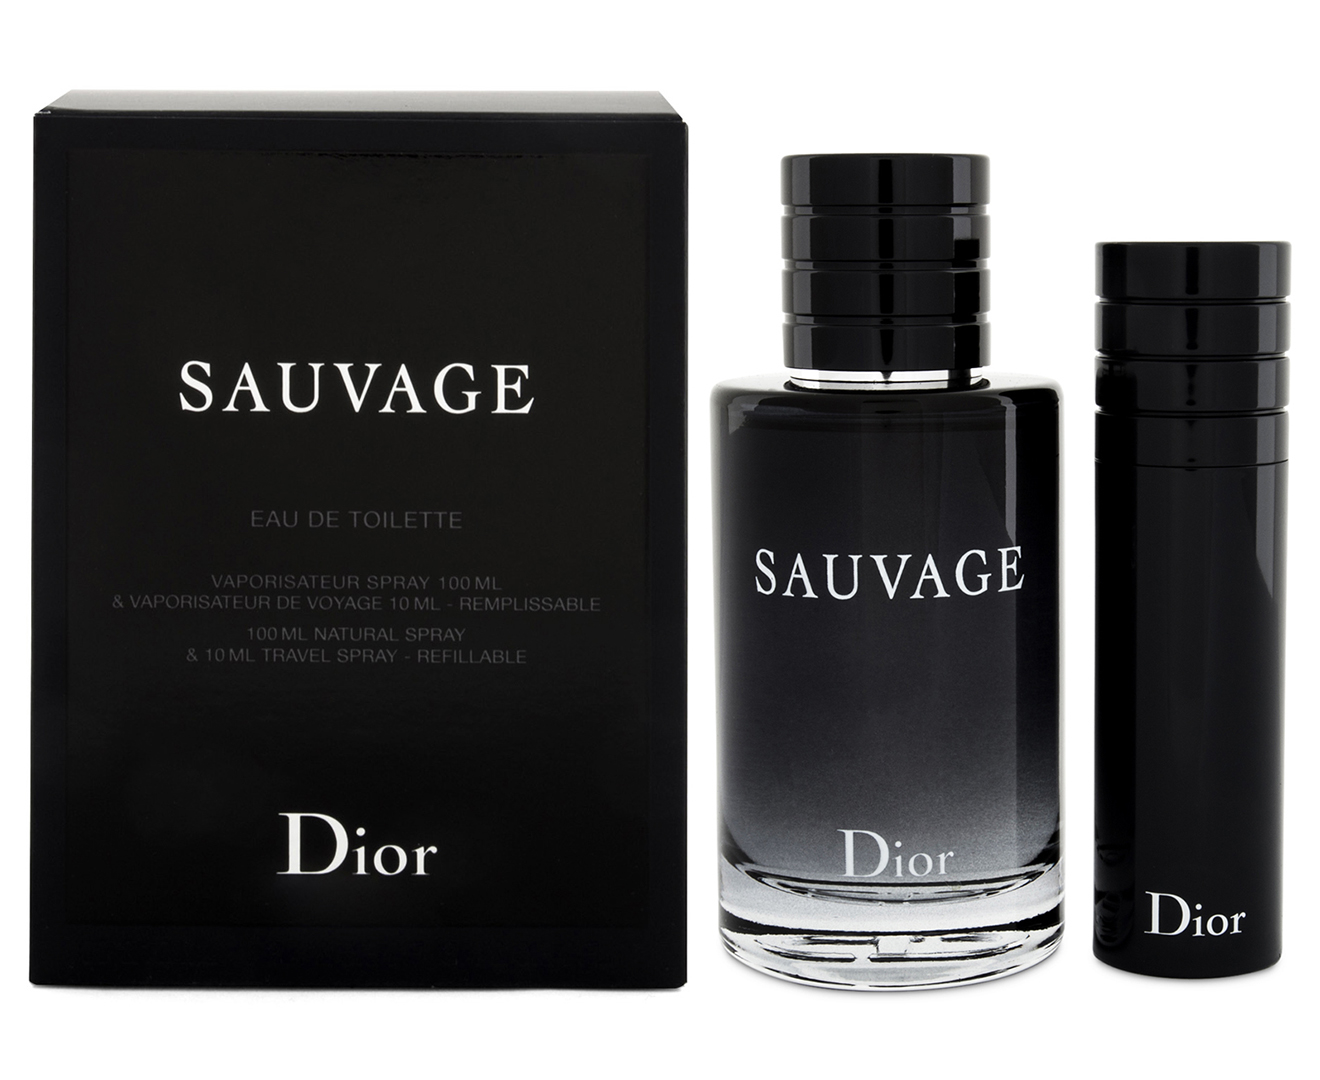 sauvage dior gift set